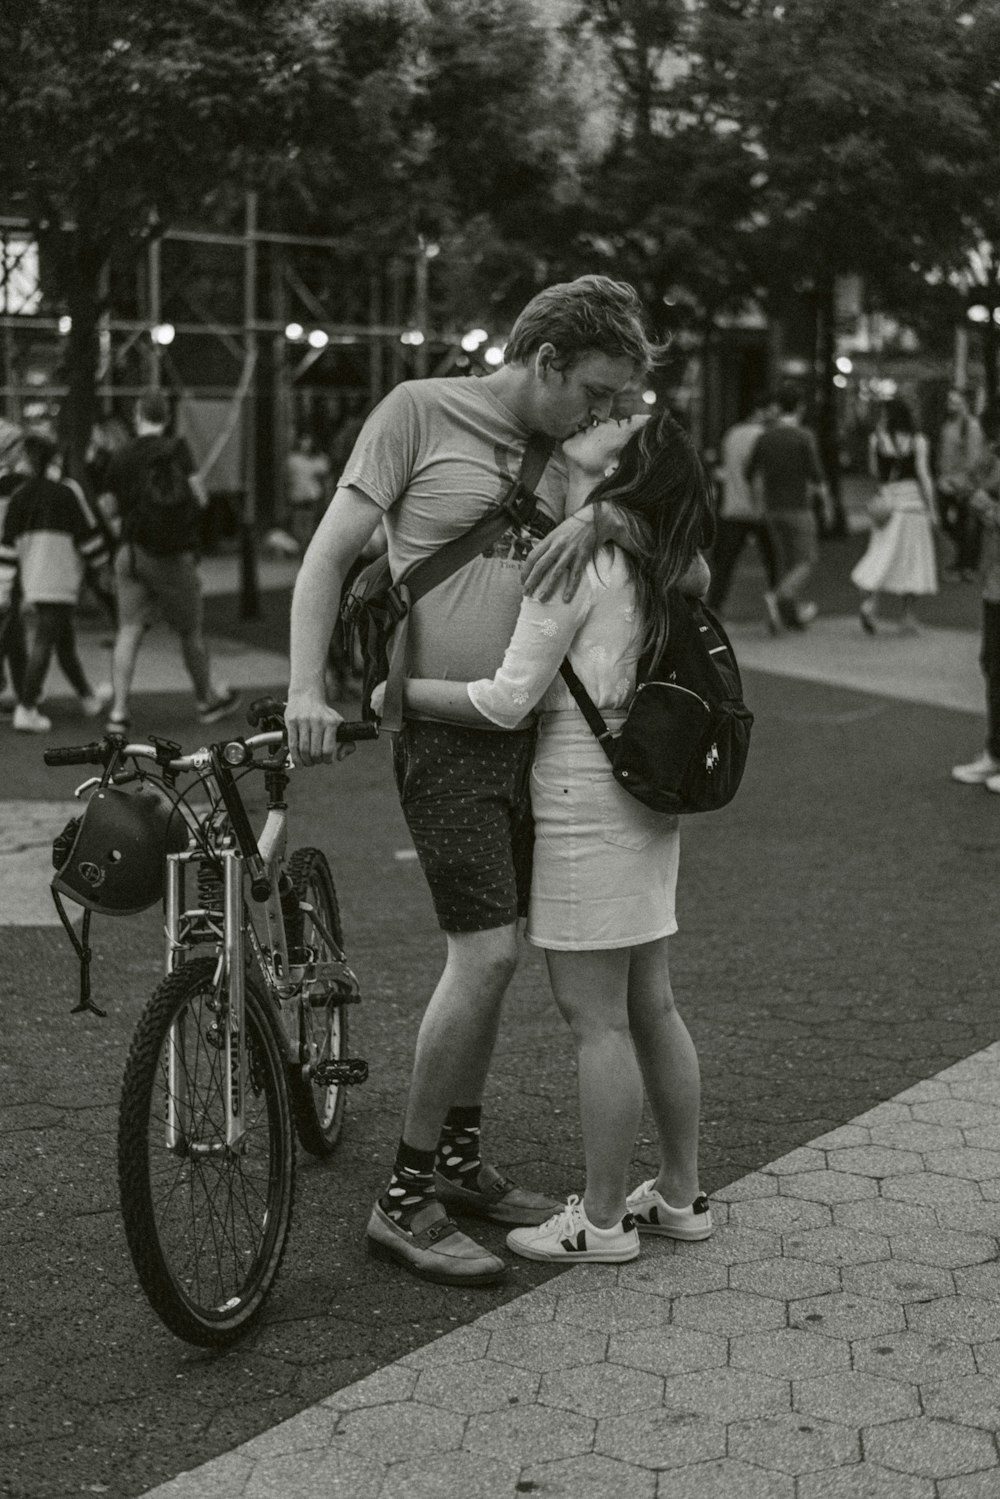 foto in scala di grigi di uomo e donna che si baciano